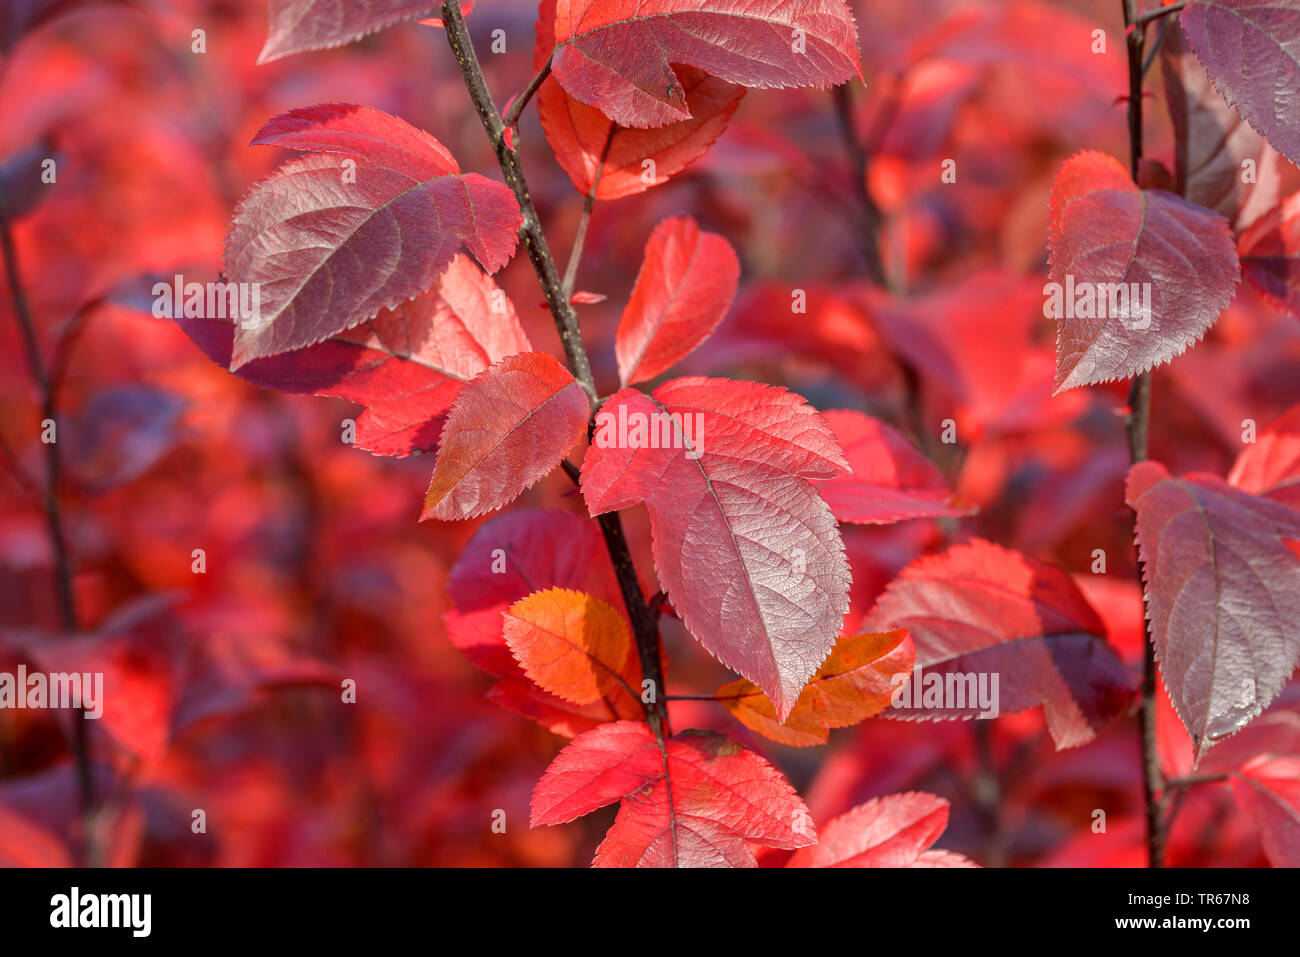 Ornamental apple tree (Malus 'Coccinella', Malus Coccinella), autumn leaves of cultivar Coccinella, Germany, Saxony Stock Photo